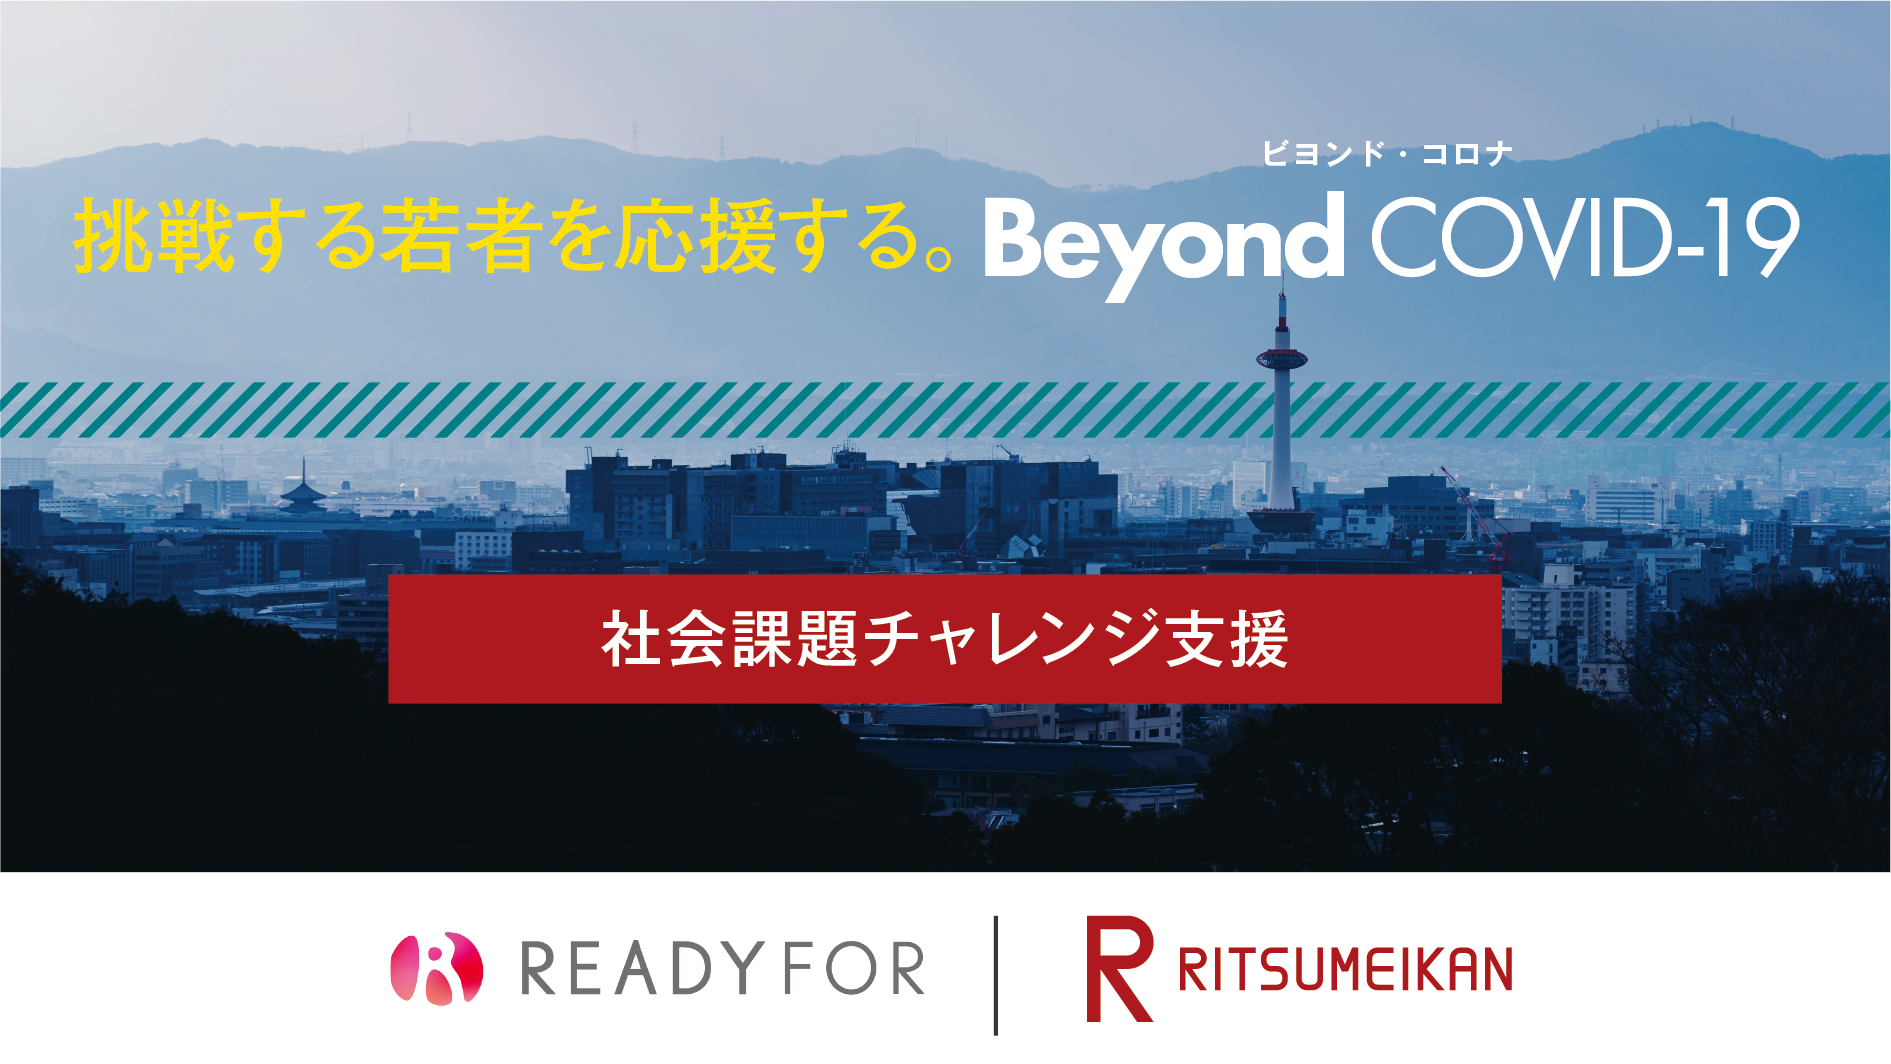 READYFOR × Ritsumeikan クラウドファンディングを開始しました